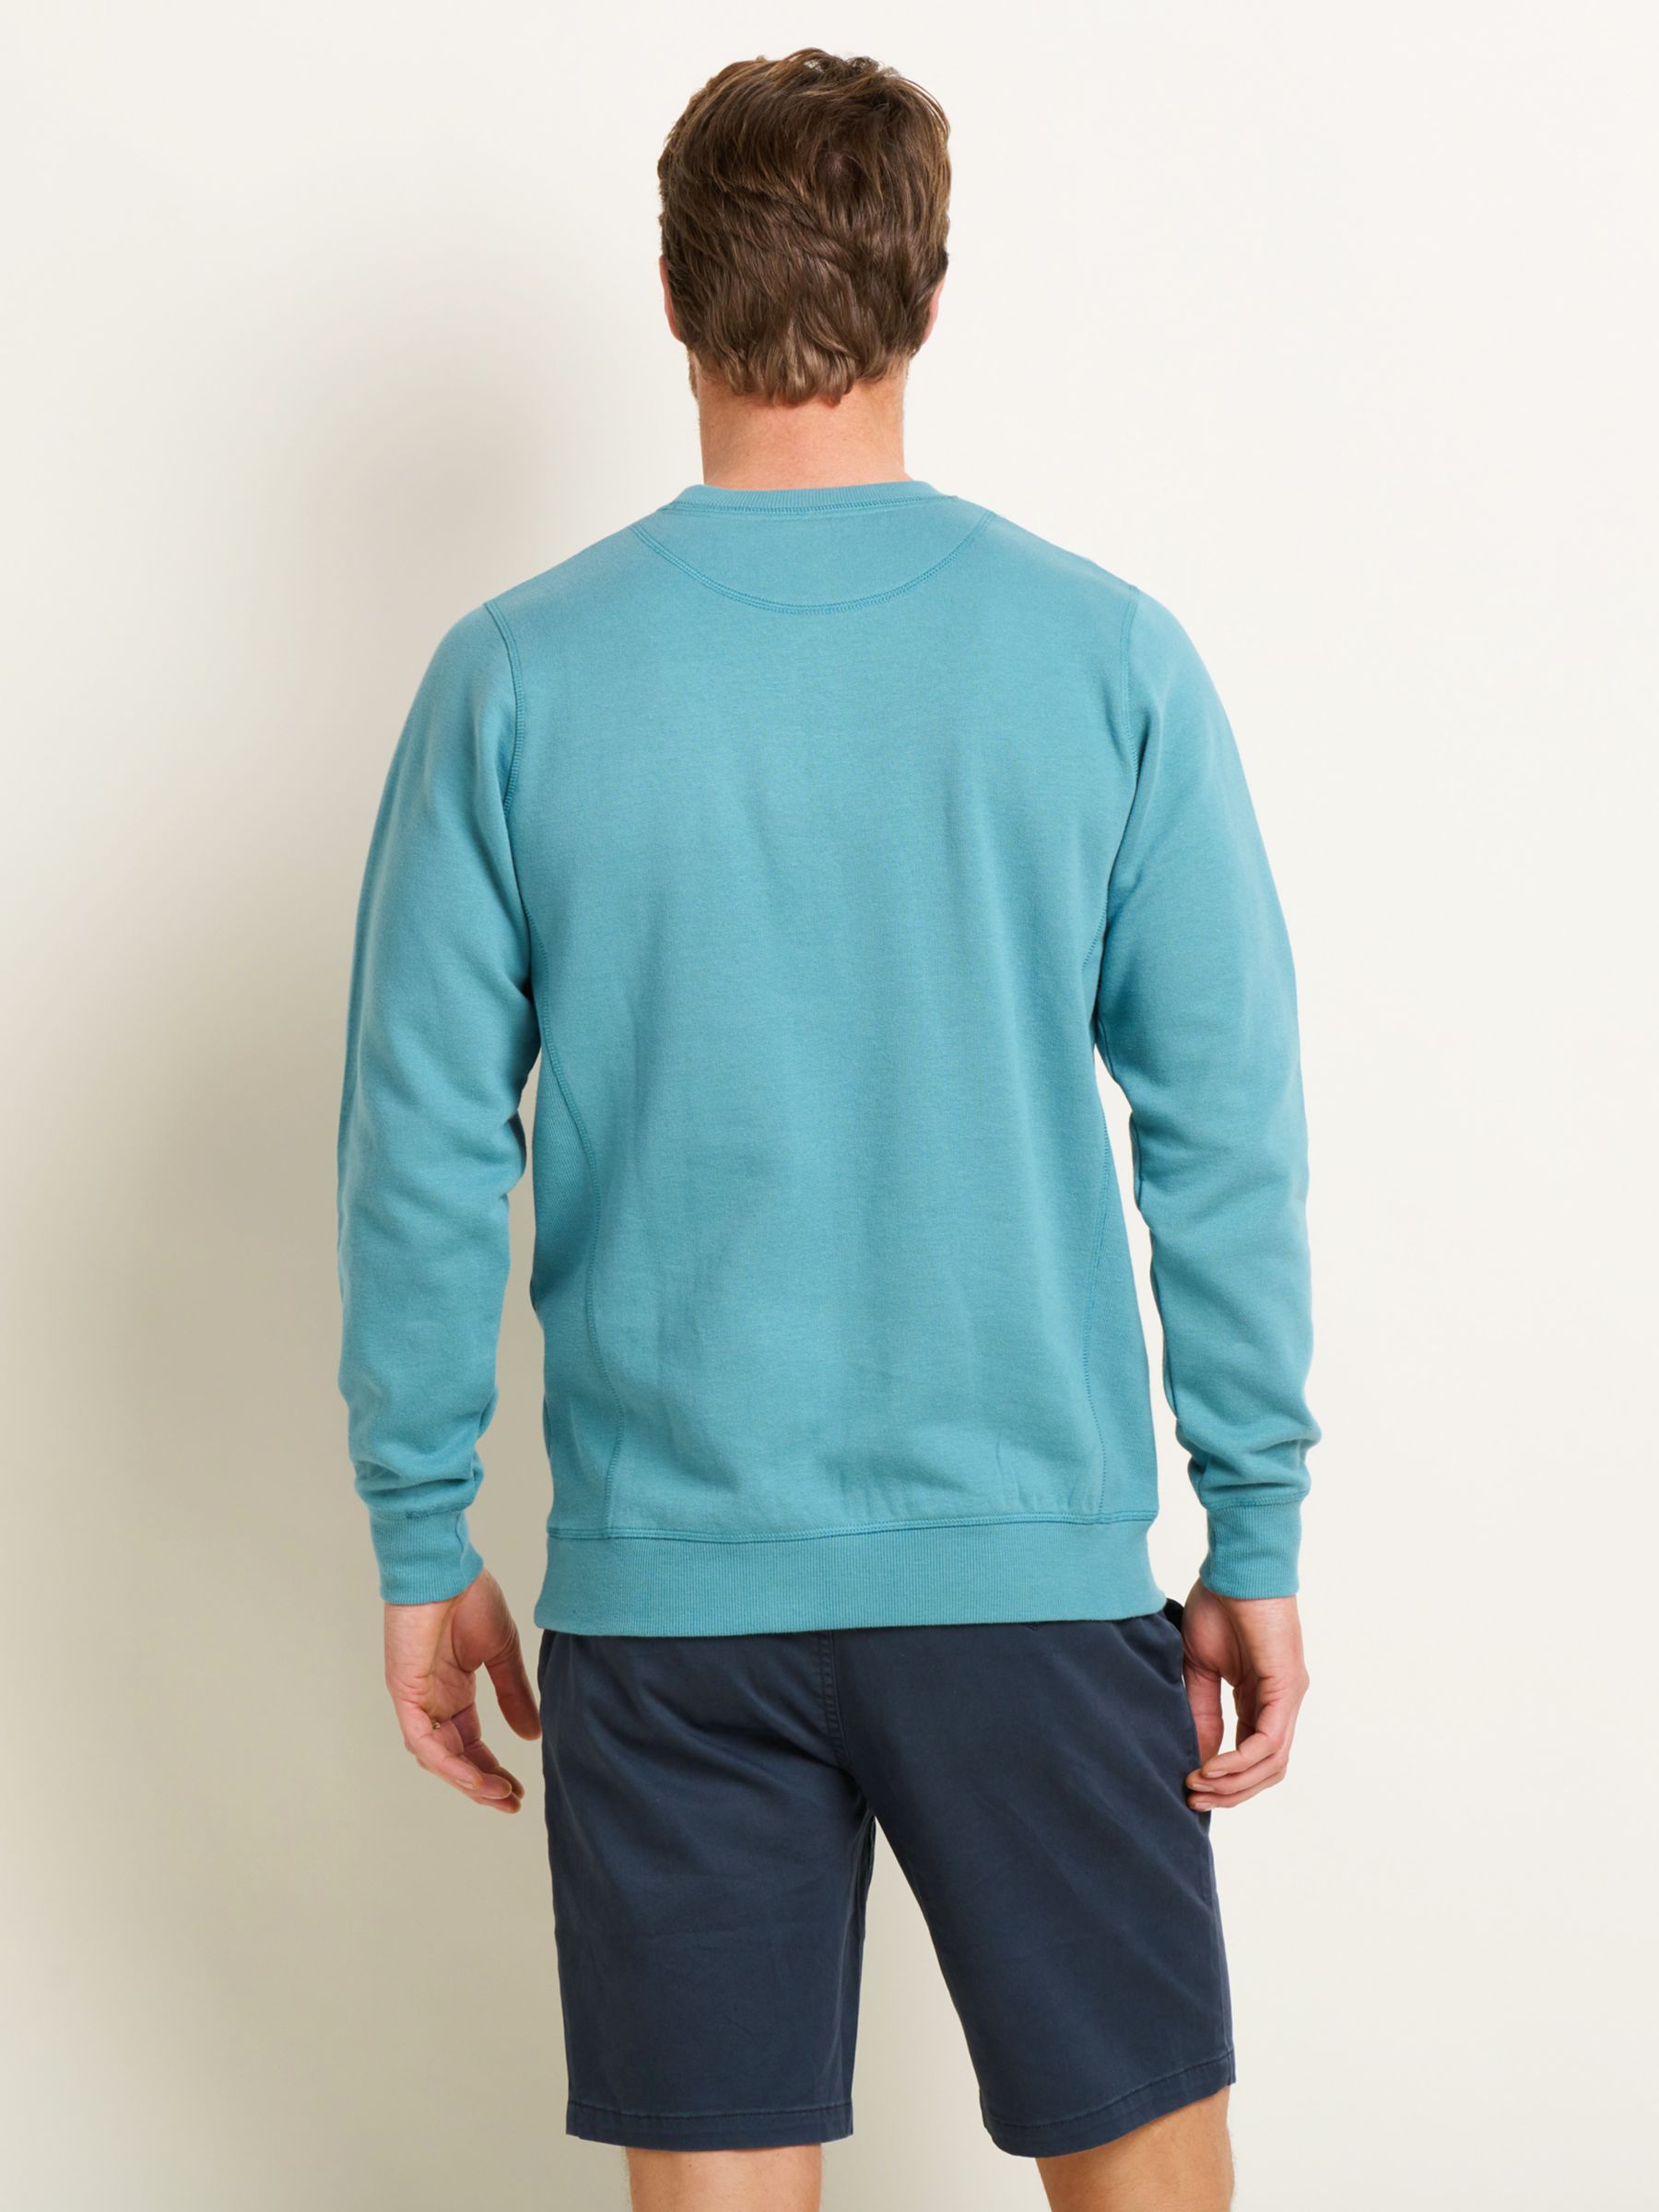 Buy Brakeburn Custom Crew Neck Sweatshirt, Green Online at johnlewis.com